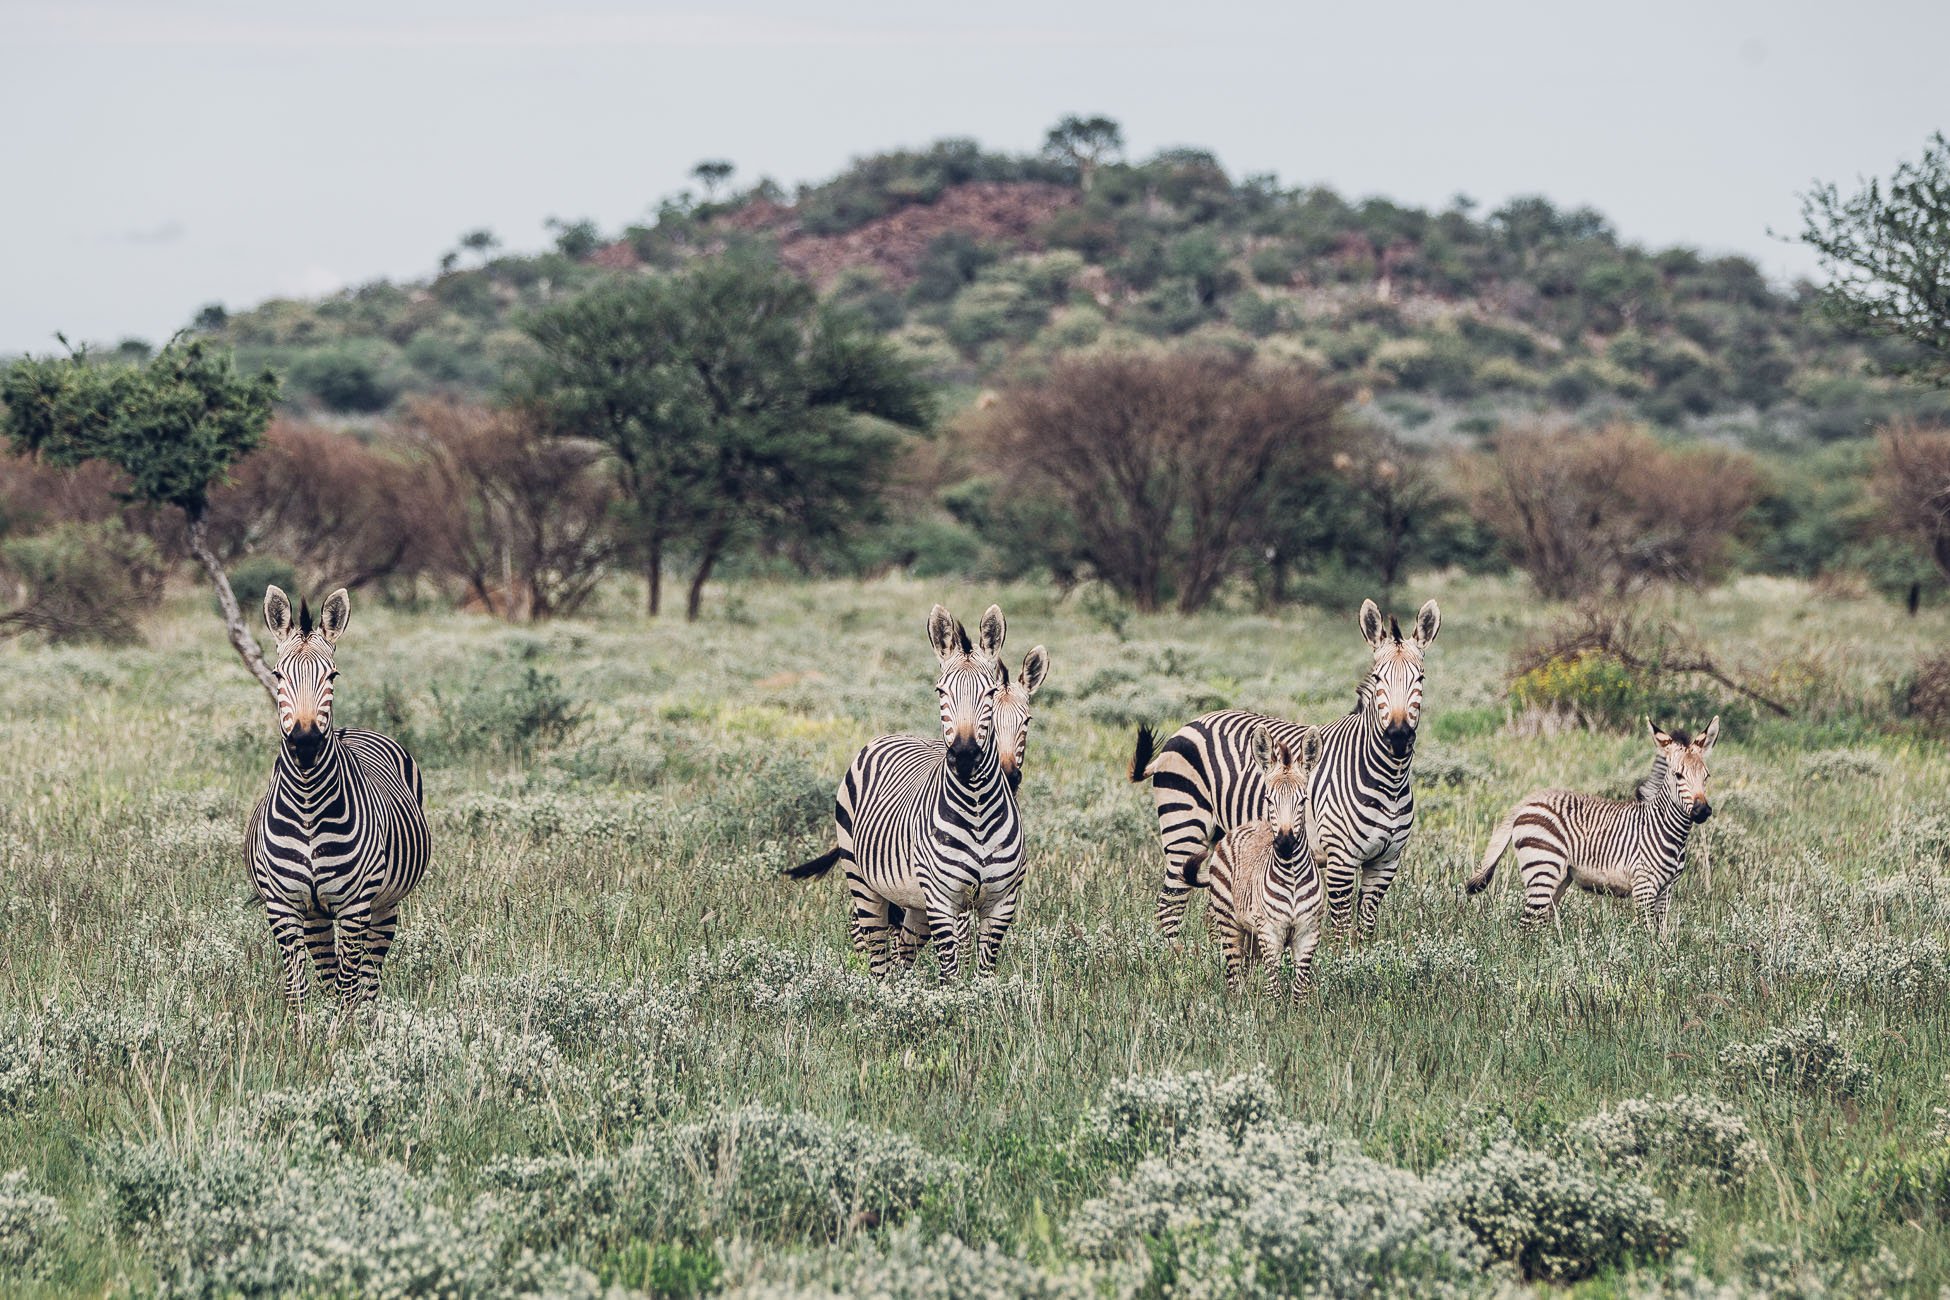 Zebras at a safari in Namibia